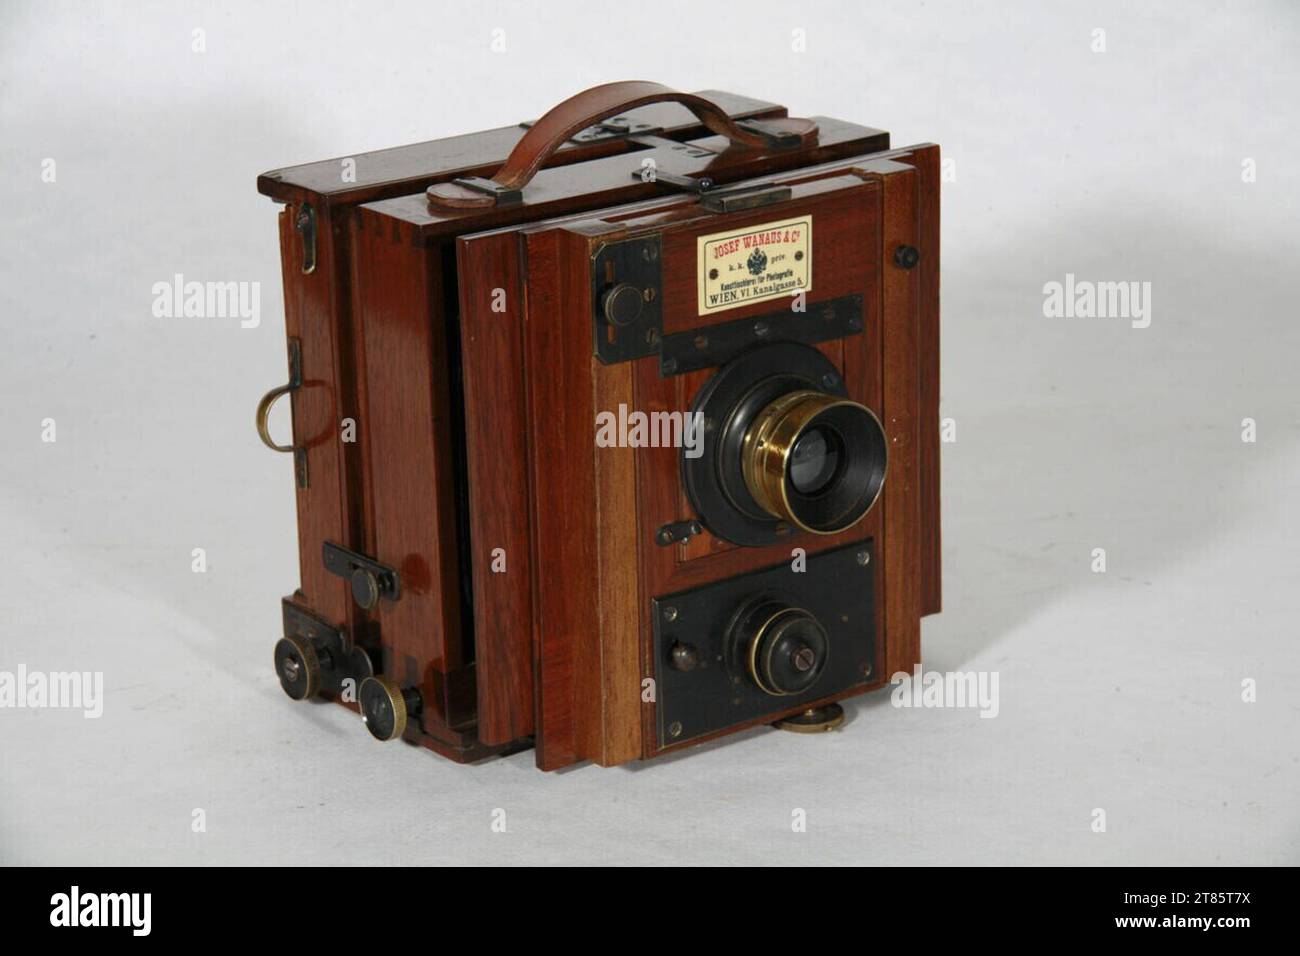 Josef Wanaus (Produzent in) Box camera - 9 x 12 cm, obiettivo anastigmat Carl Zeiss N. 9662, 1: 7,2 f = 120 mm, D.R.P 56109 e miscele di iride (2, 4, 8, 26, 32, 64, 128, 192), piastra per lenti con chiusura a ghigliottina incorporata 0-5. Pelle di legno 1880 - 1900 , 1880/1900 Foto Stock